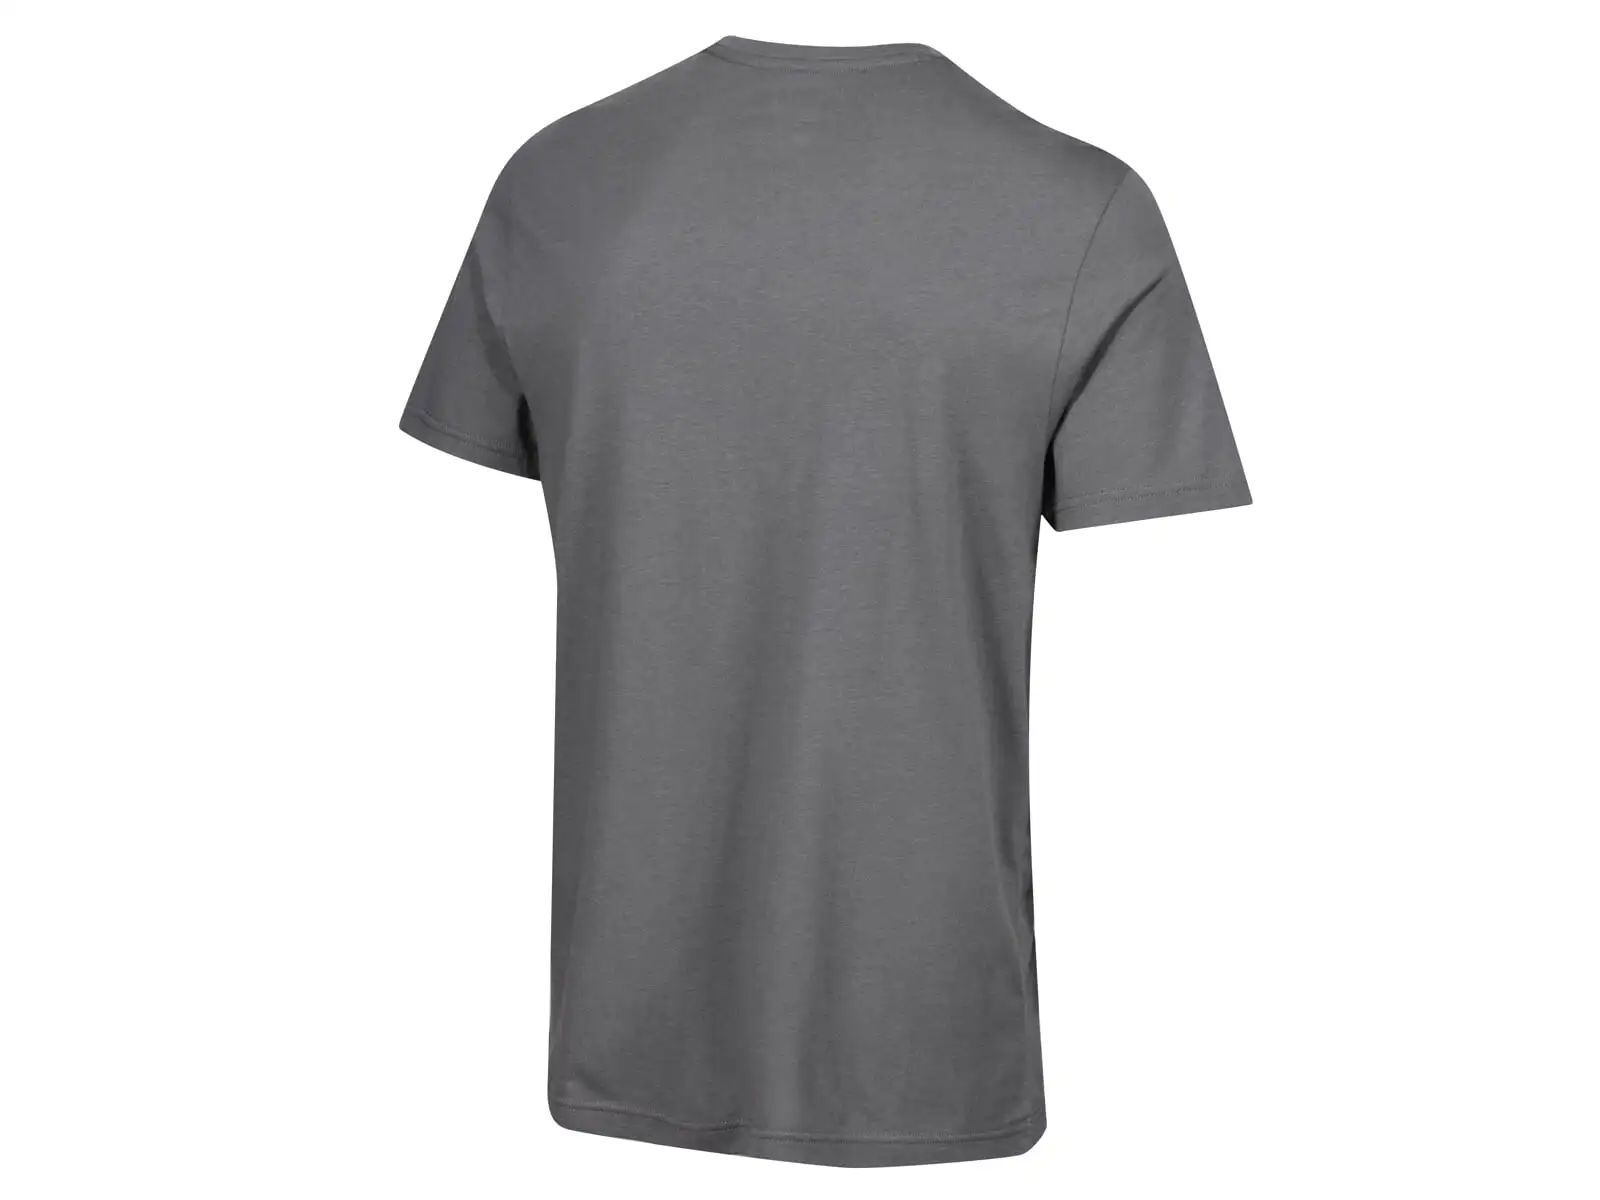 Inov-8 Graphic Tee Helvellyn pánské tričko krátký rukáv Grey